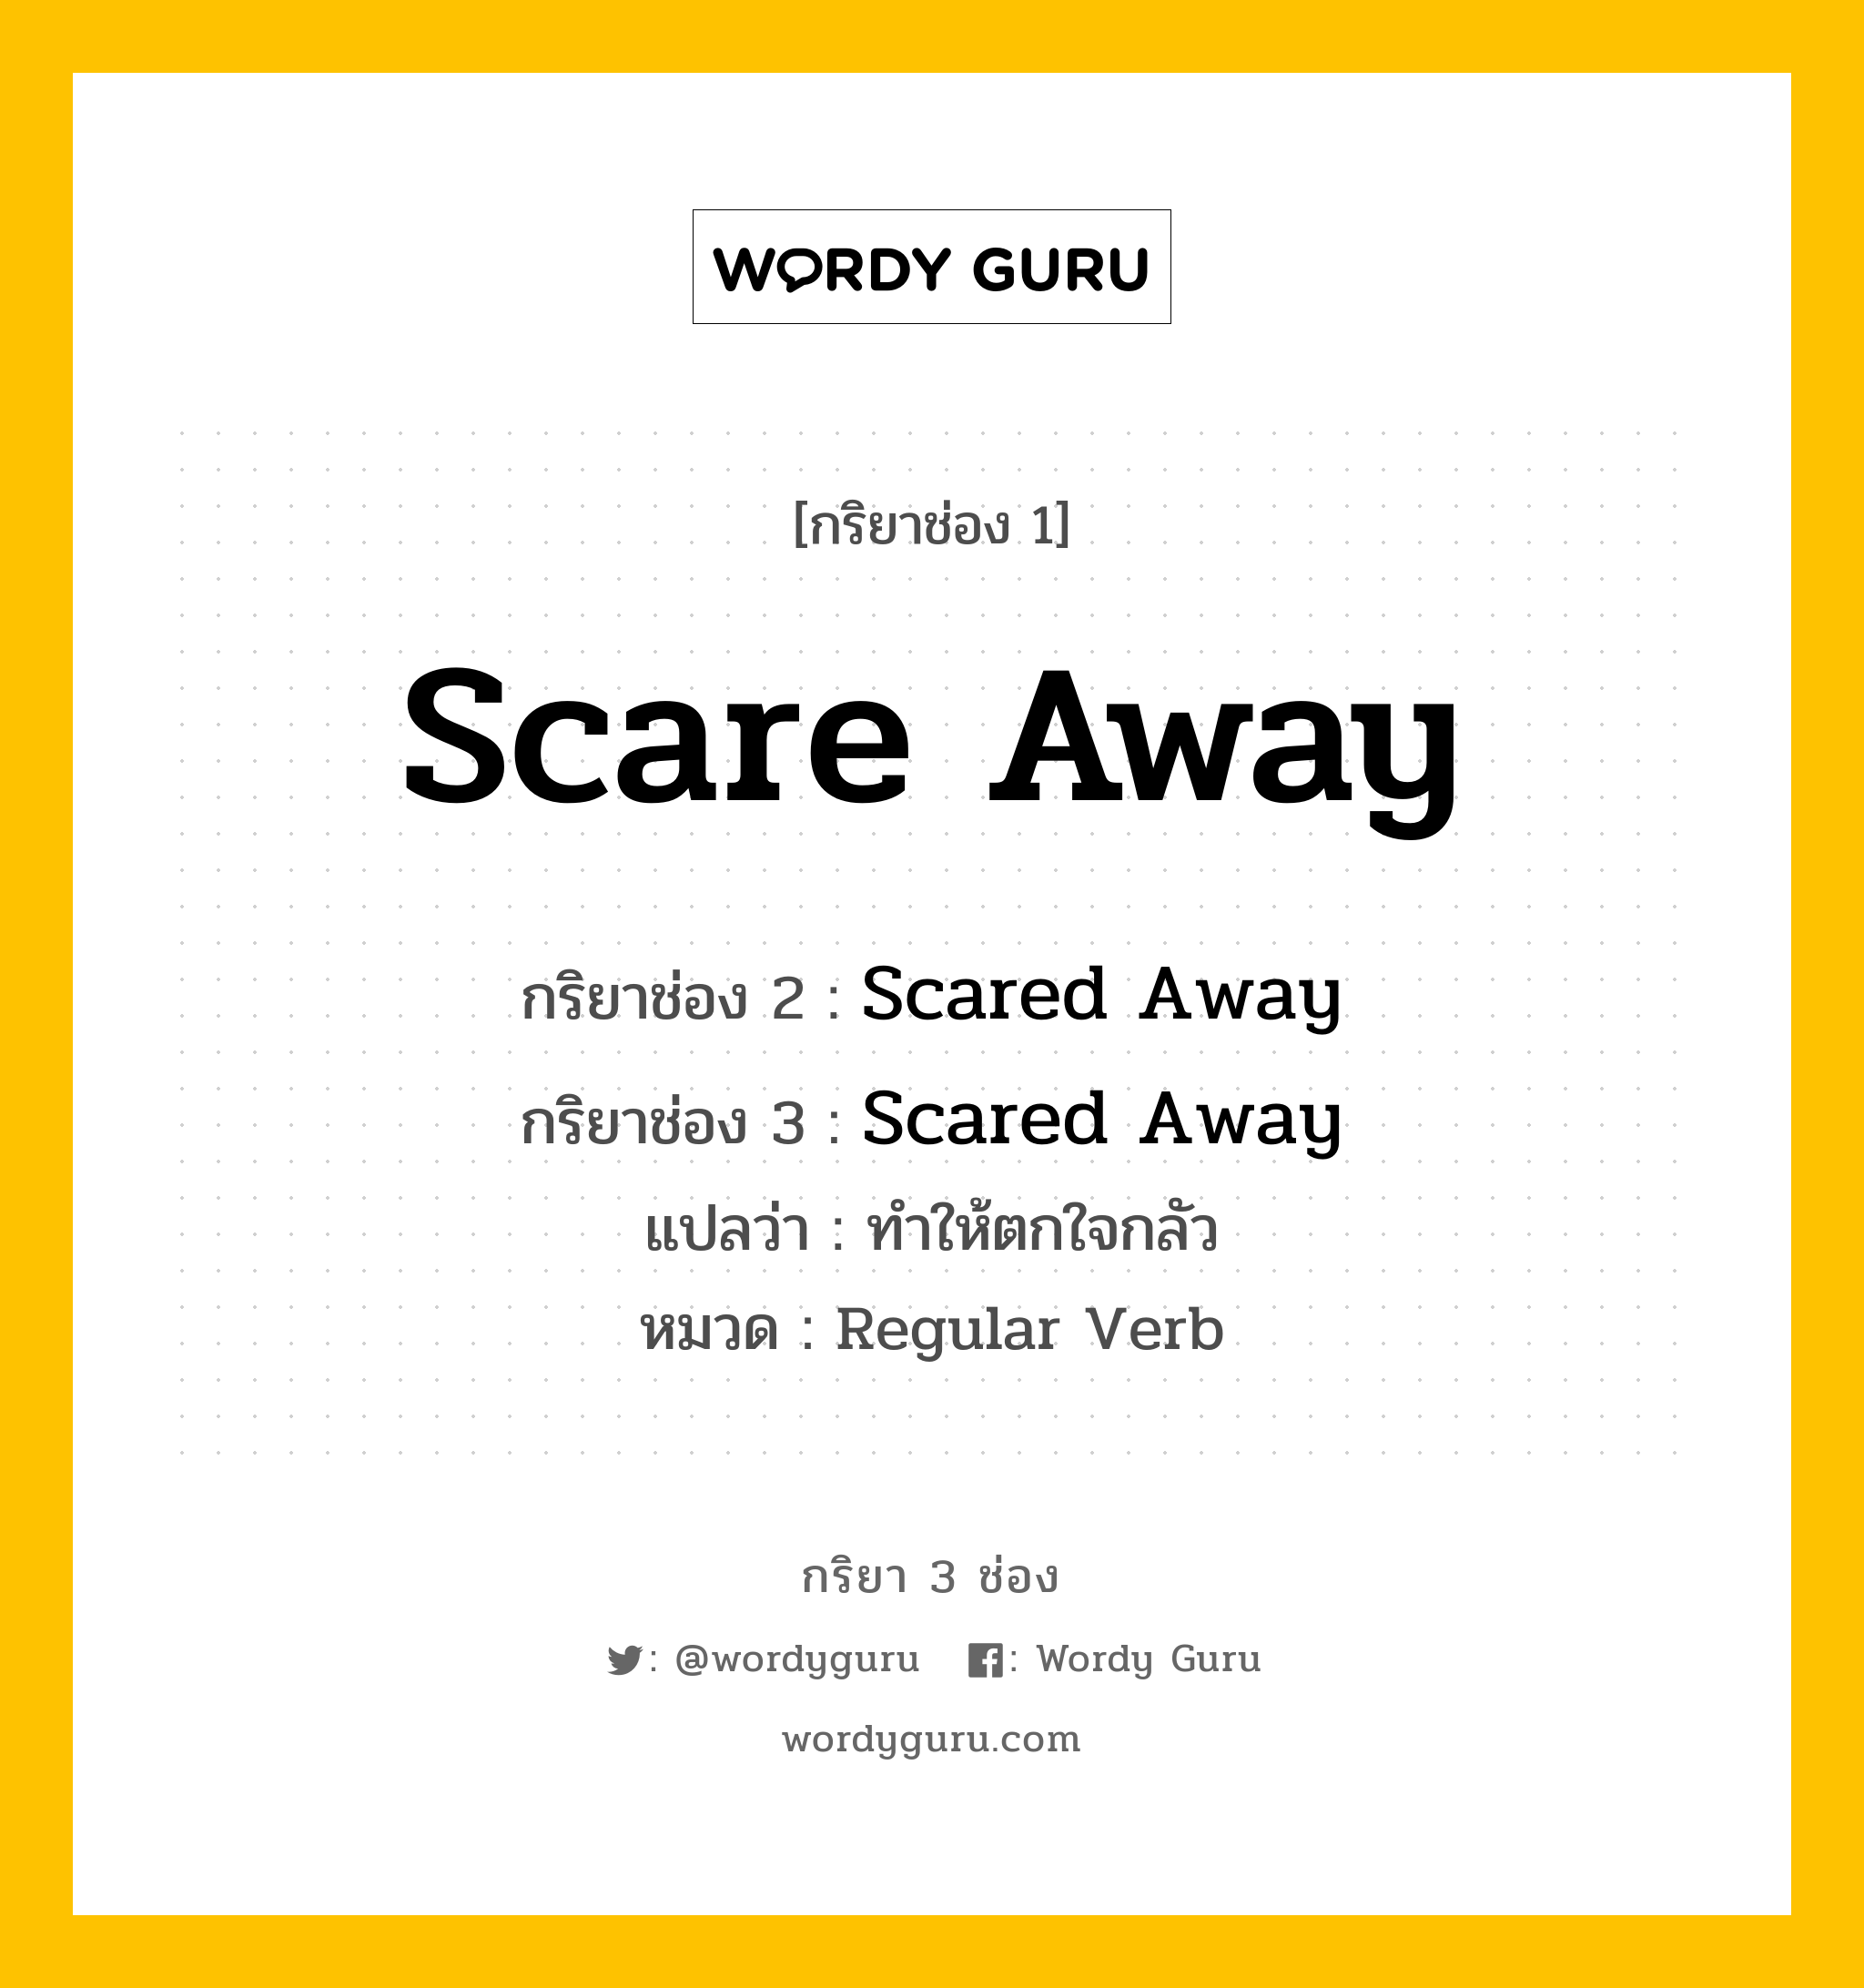 กริยา 3 ช่อง ของ Scare Away คืออะไร? มาดูคำอ่าน คำแปลกันเลย, กริยาช่อง 1 Scare Away กริยาช่อง 2 Scared Away กริยาช่อง 3 Scared Away แปลว่า ทำให้ตกใจกลัว หมวด Regular Verb หมวด Regular Verb